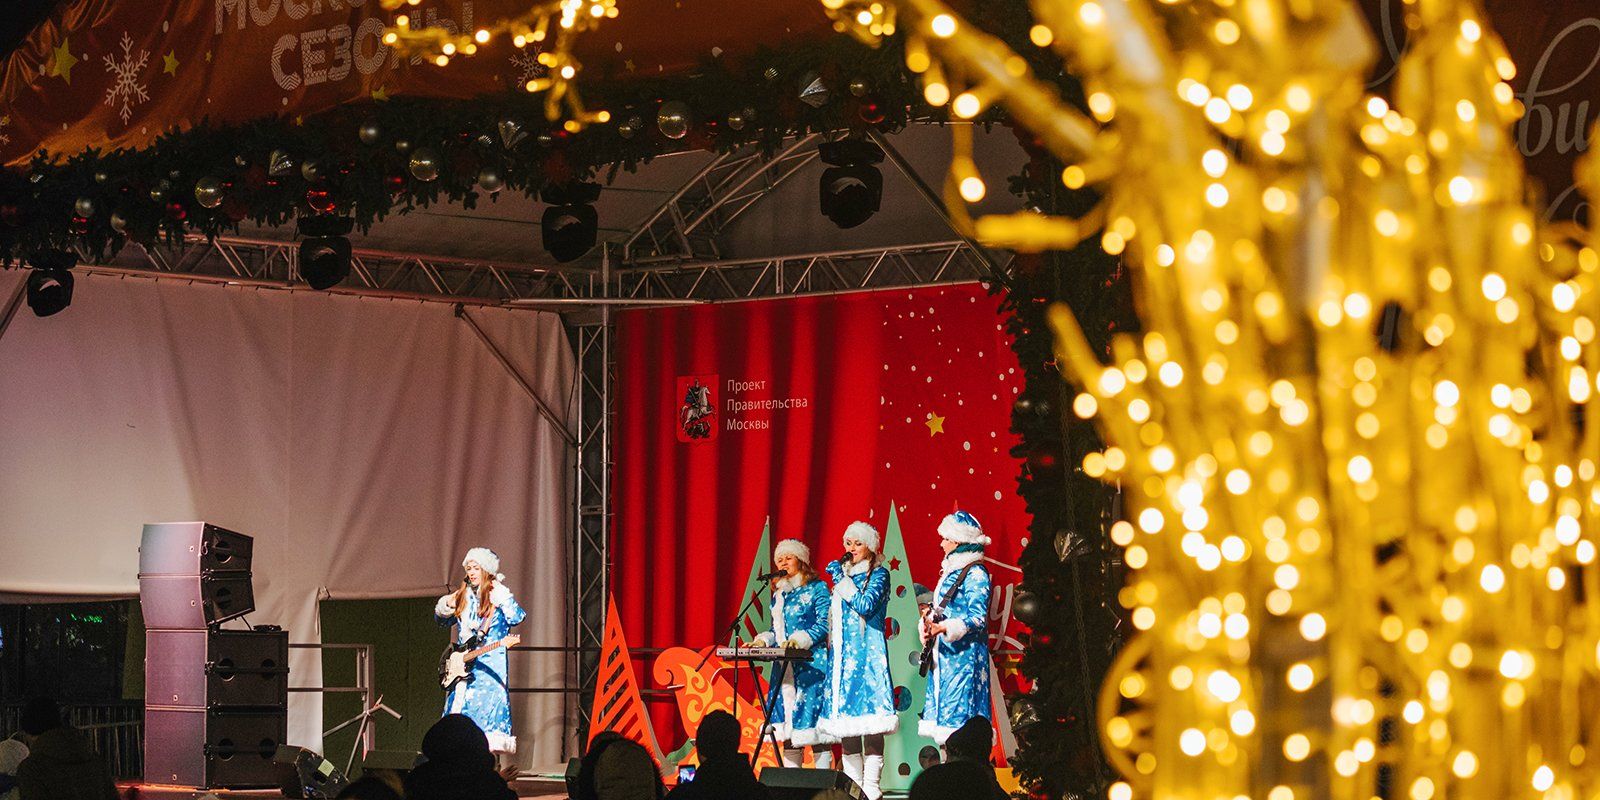 Маскарад, дискотека с Шекспиром и Дед Мороз под окном: как встретить 2019 год